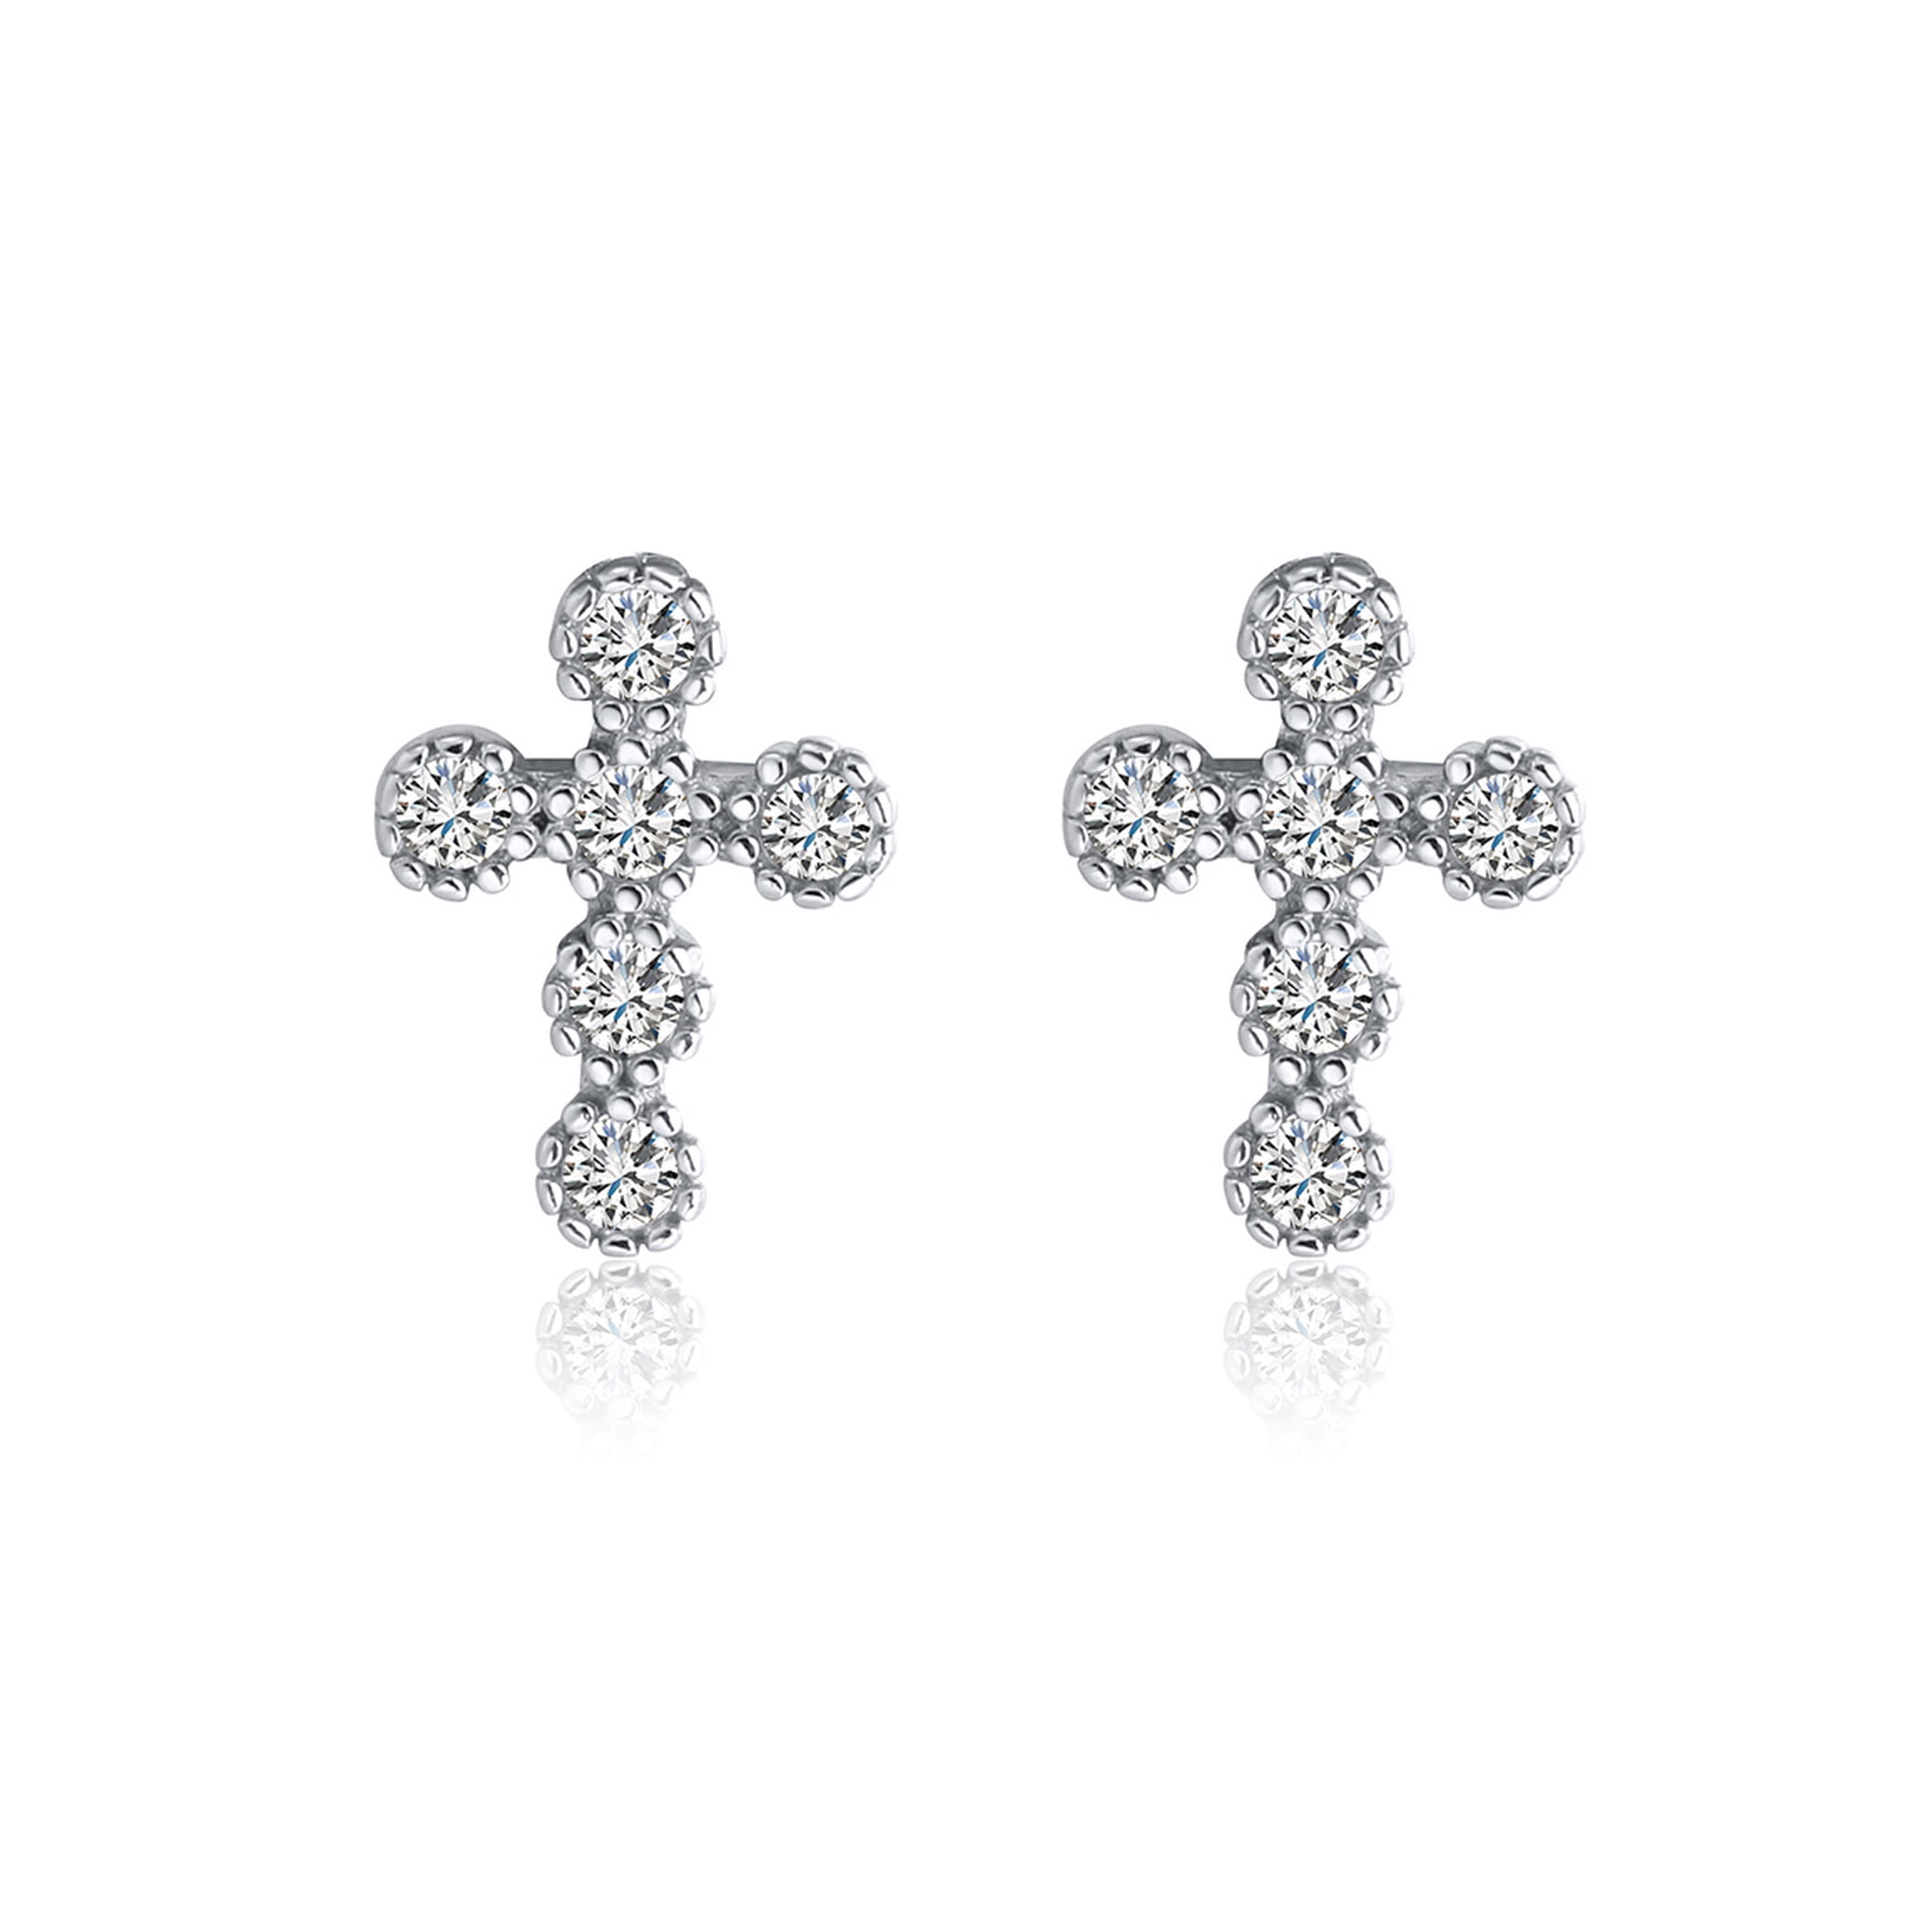 Girl's 925 Sterling Silver Small Cubic Zirconia Cross Stud Earrings 